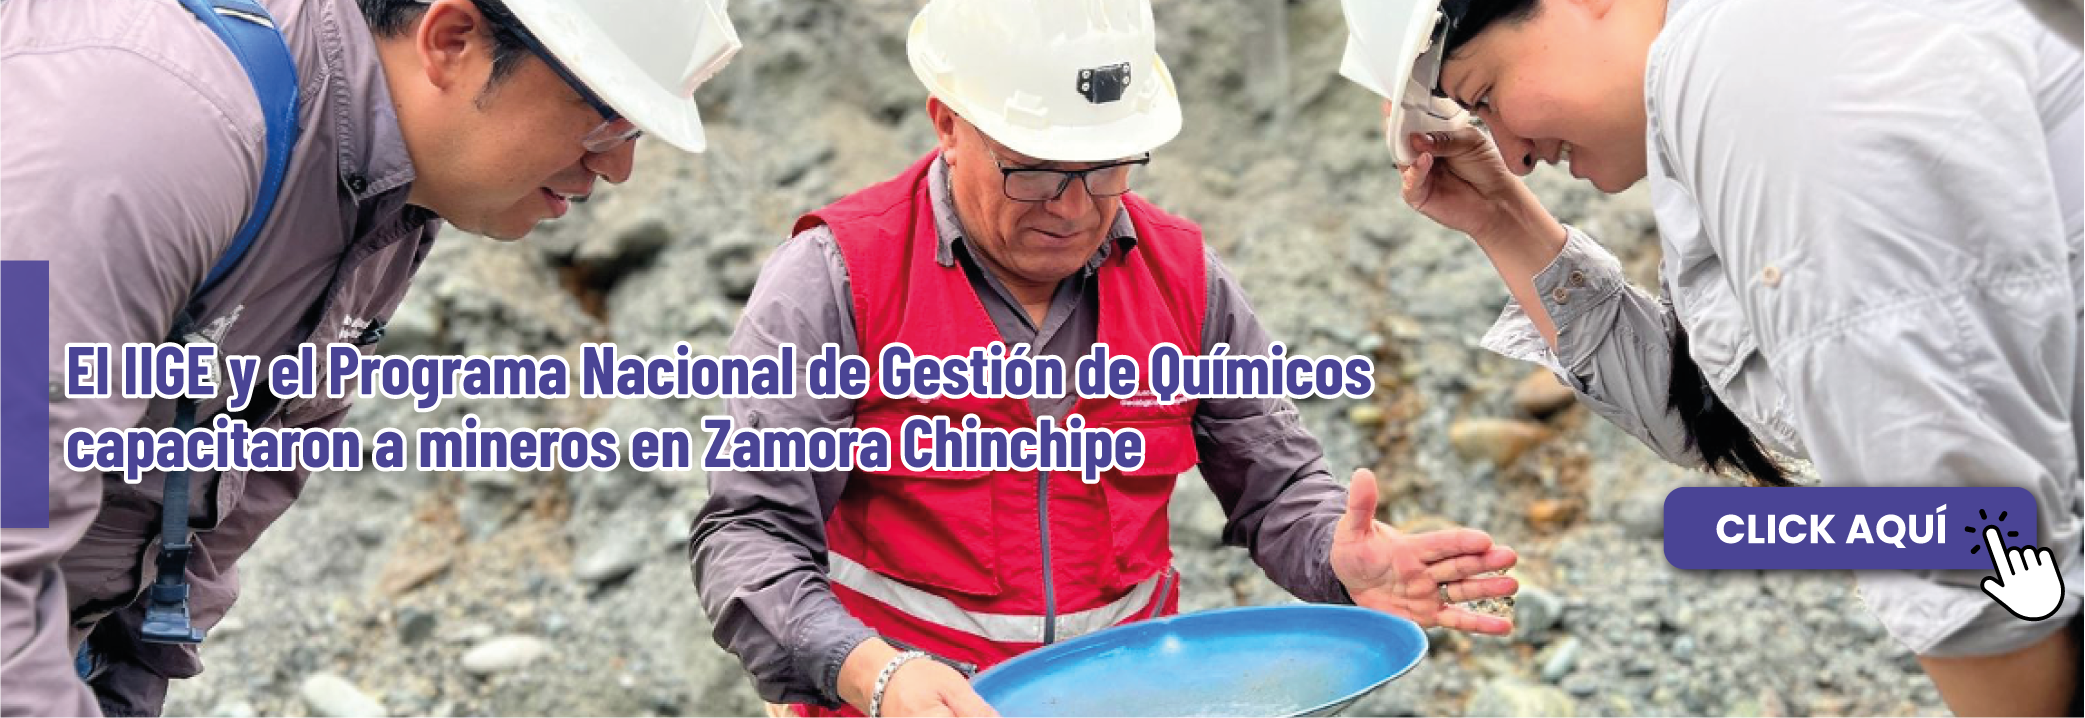 El IIGE y el Programa Nacional de Gestión de Químicos capacitaron a mineros en Zamora Chinchipe